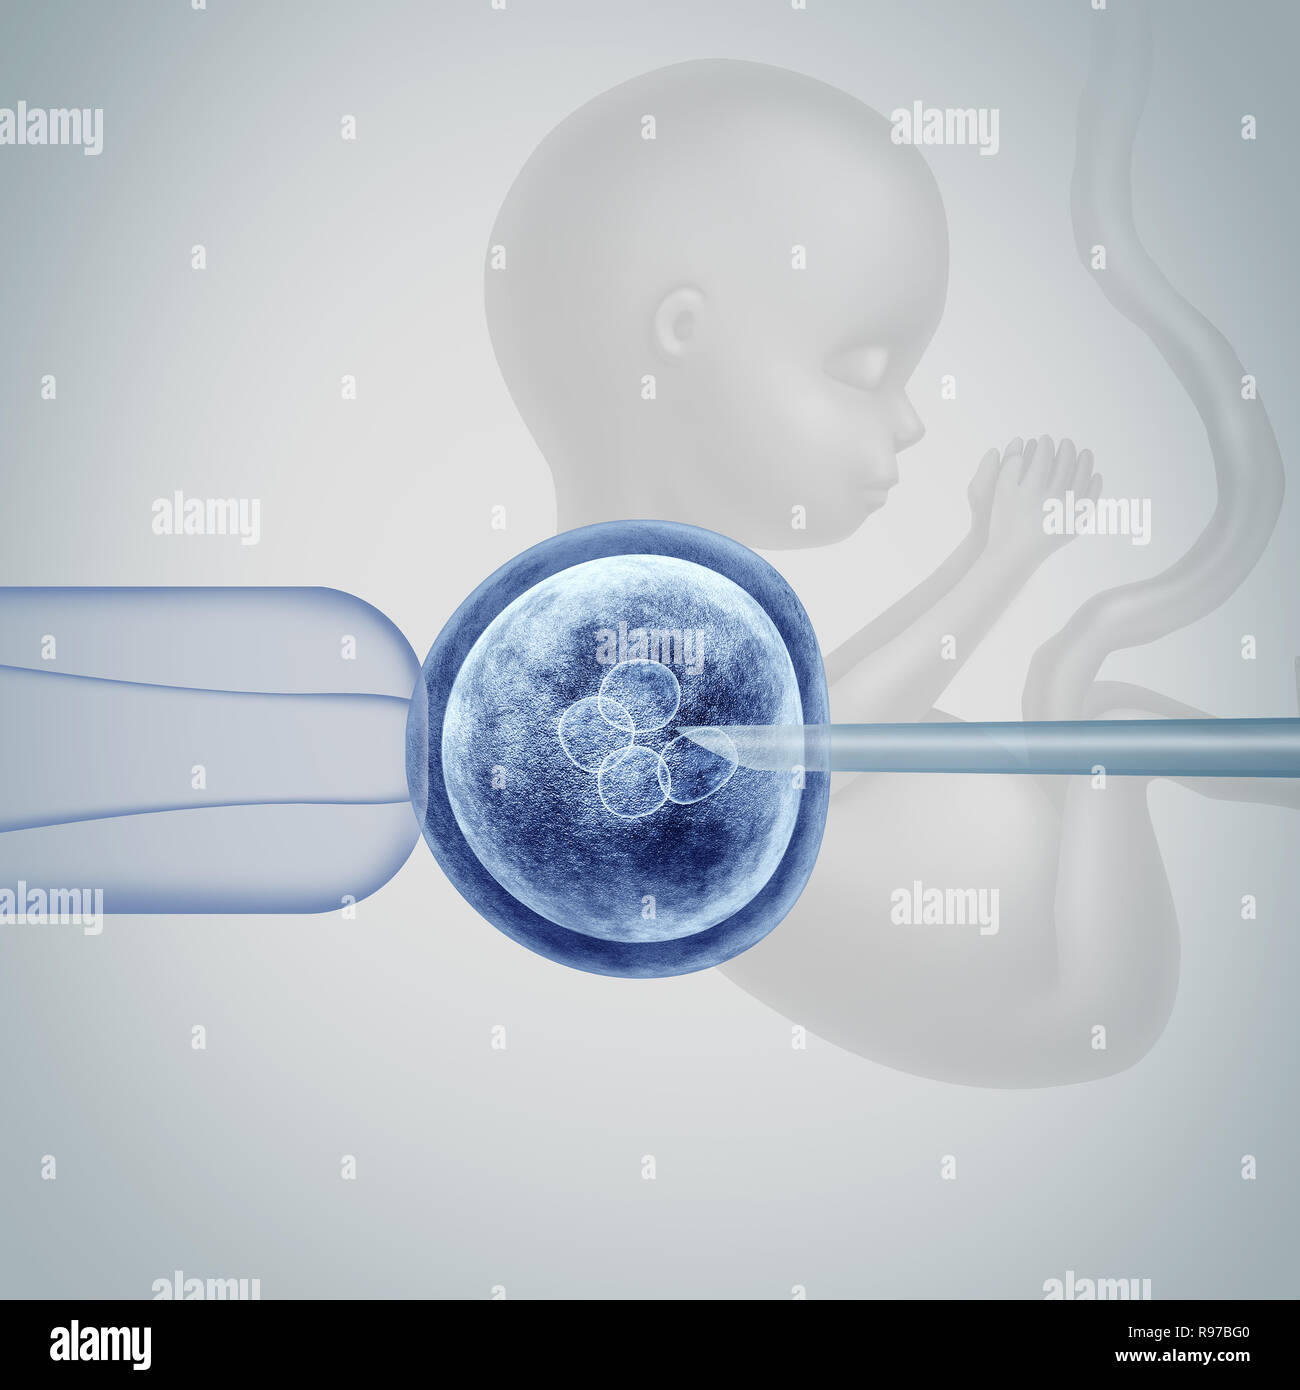 Gen bearbeiten Wissenschaft In-vitro-genetischen CRISPR Genom engineering Medizinische Biotechnologie Gesundheitswesen Konzept mit einer befruchteten menschlichen Eizelle Embryo. Stockfoto